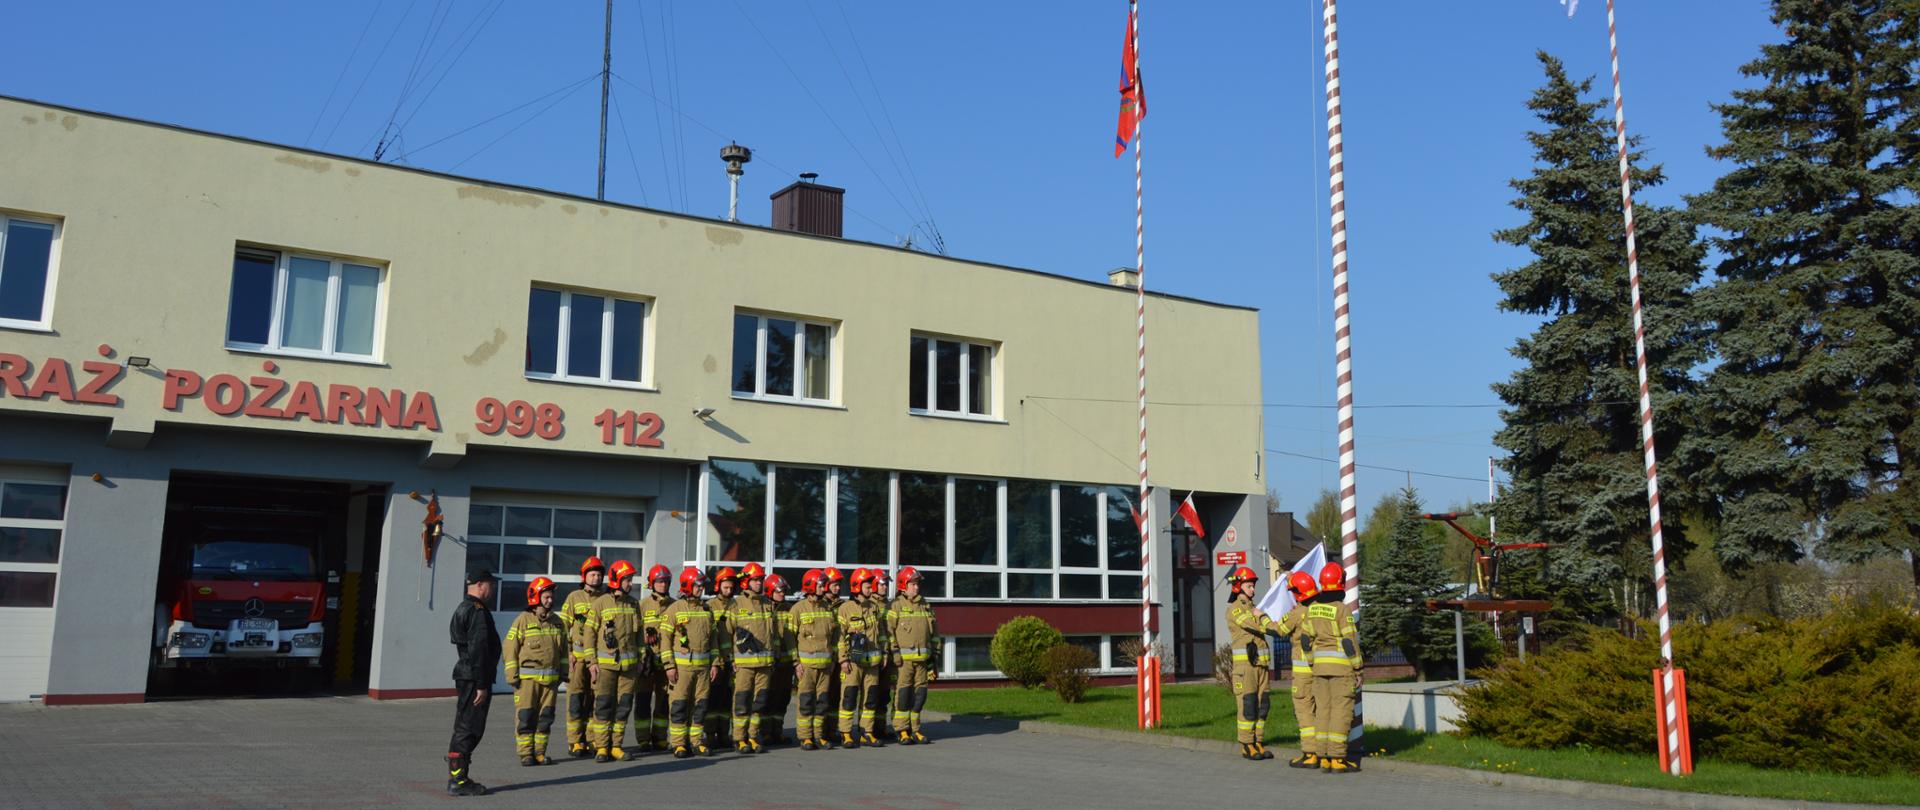 Zdjęcie przedstawia strażaków Komendy Powiatowej PSP powiatu łódzkiego wschodniego podczas uroczystego wciągnięcia flagi państwowej na maszt. Na zdjęciu widoczni strażacy ustawieni w dwuszeregu w jaskrawych ubraniach bojowych według nowego wzoru, w czerwonych hełmach. Z lewej strony salutuje dowódca. Z prawej strony przy maszcie flagowym salutuje trzech strażaków pocztu flagowego. Zdjęcie wykonane na tle strażnicy Jednostki Ratowniczo-Gaśniczej w Koluszkach. 